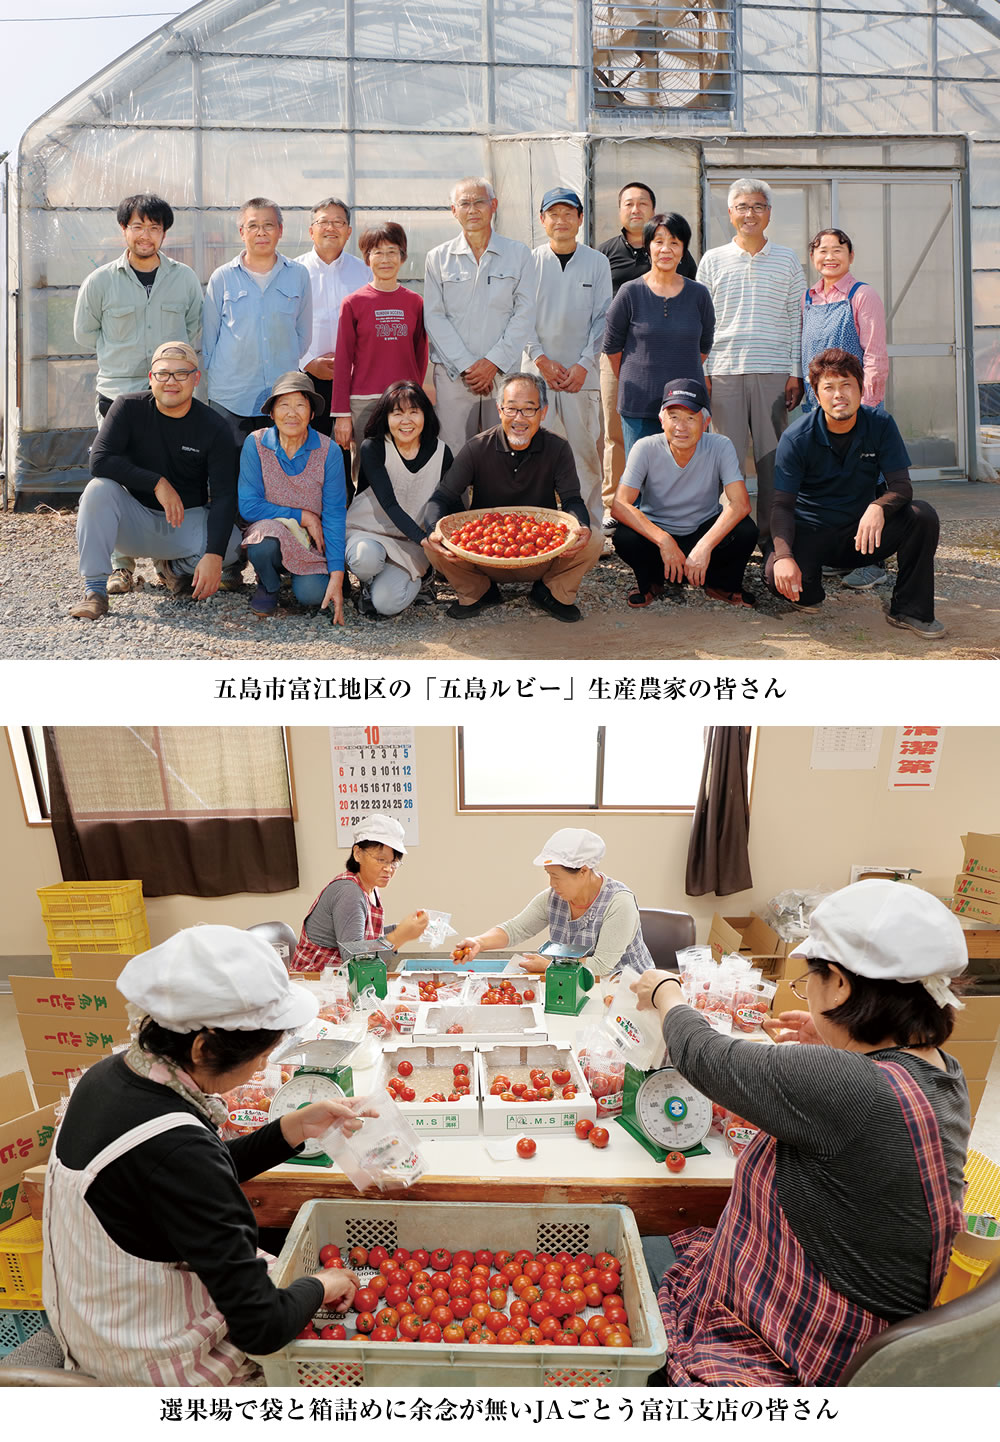 五島手延トマトうどんづくりに携わる ますだ製麺七目工場の職人